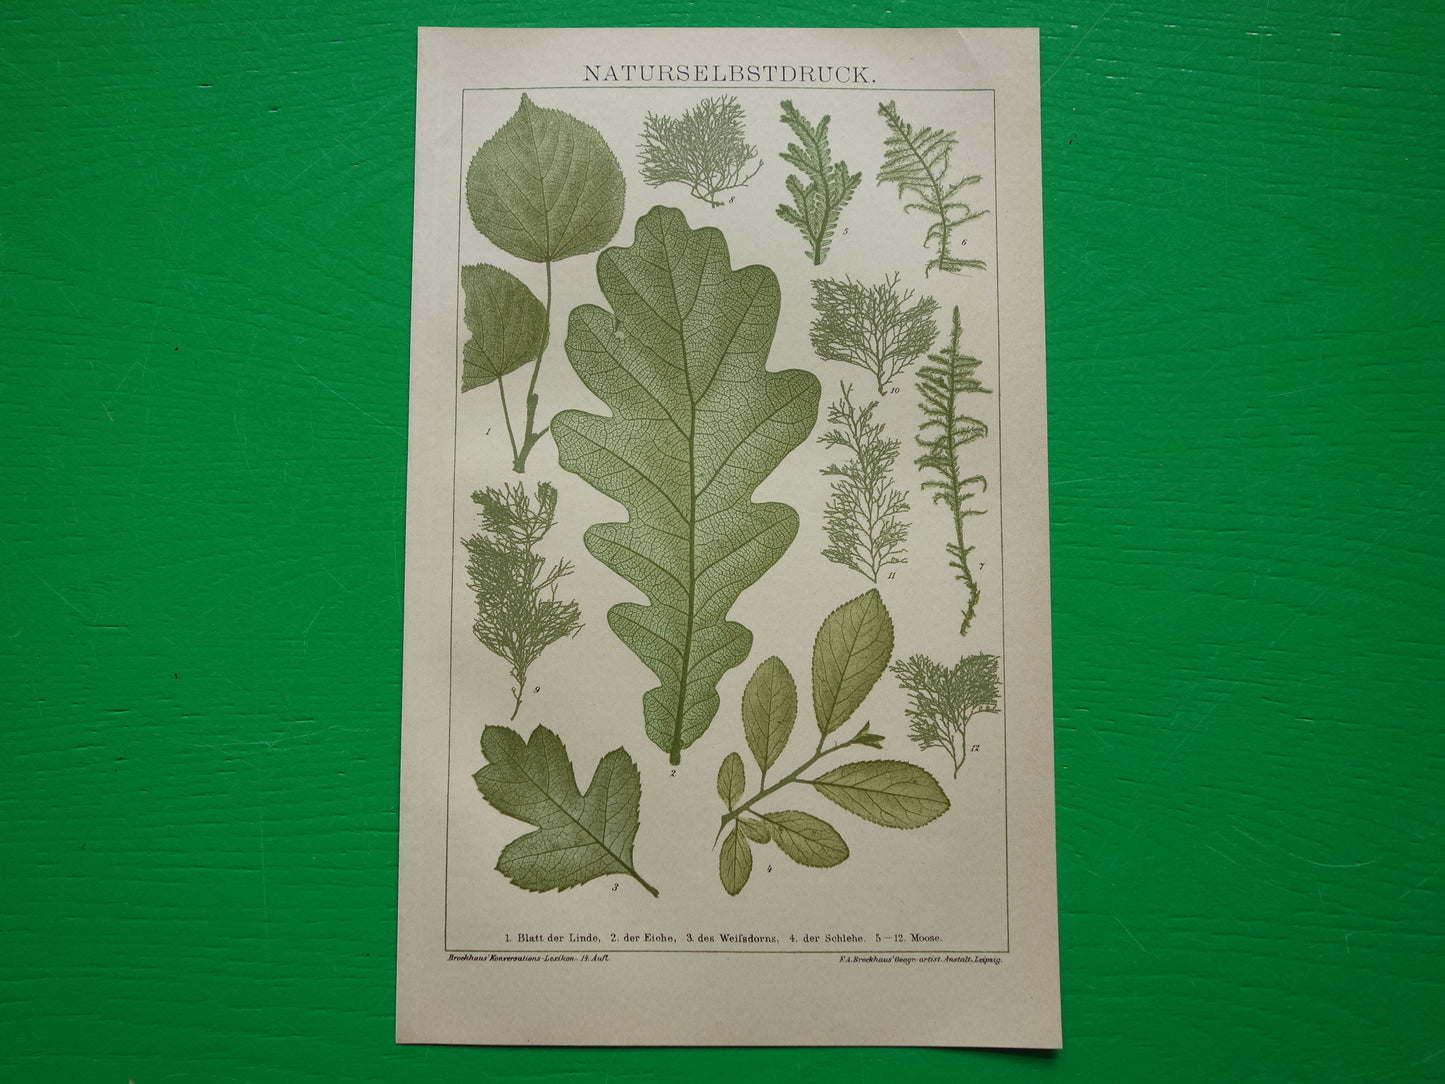 BLADEREN antieke botanische prent uit het jaar 1905 originele antieke Blad Bloemblad Bladvormen illustratie Mossen vintage printsprint